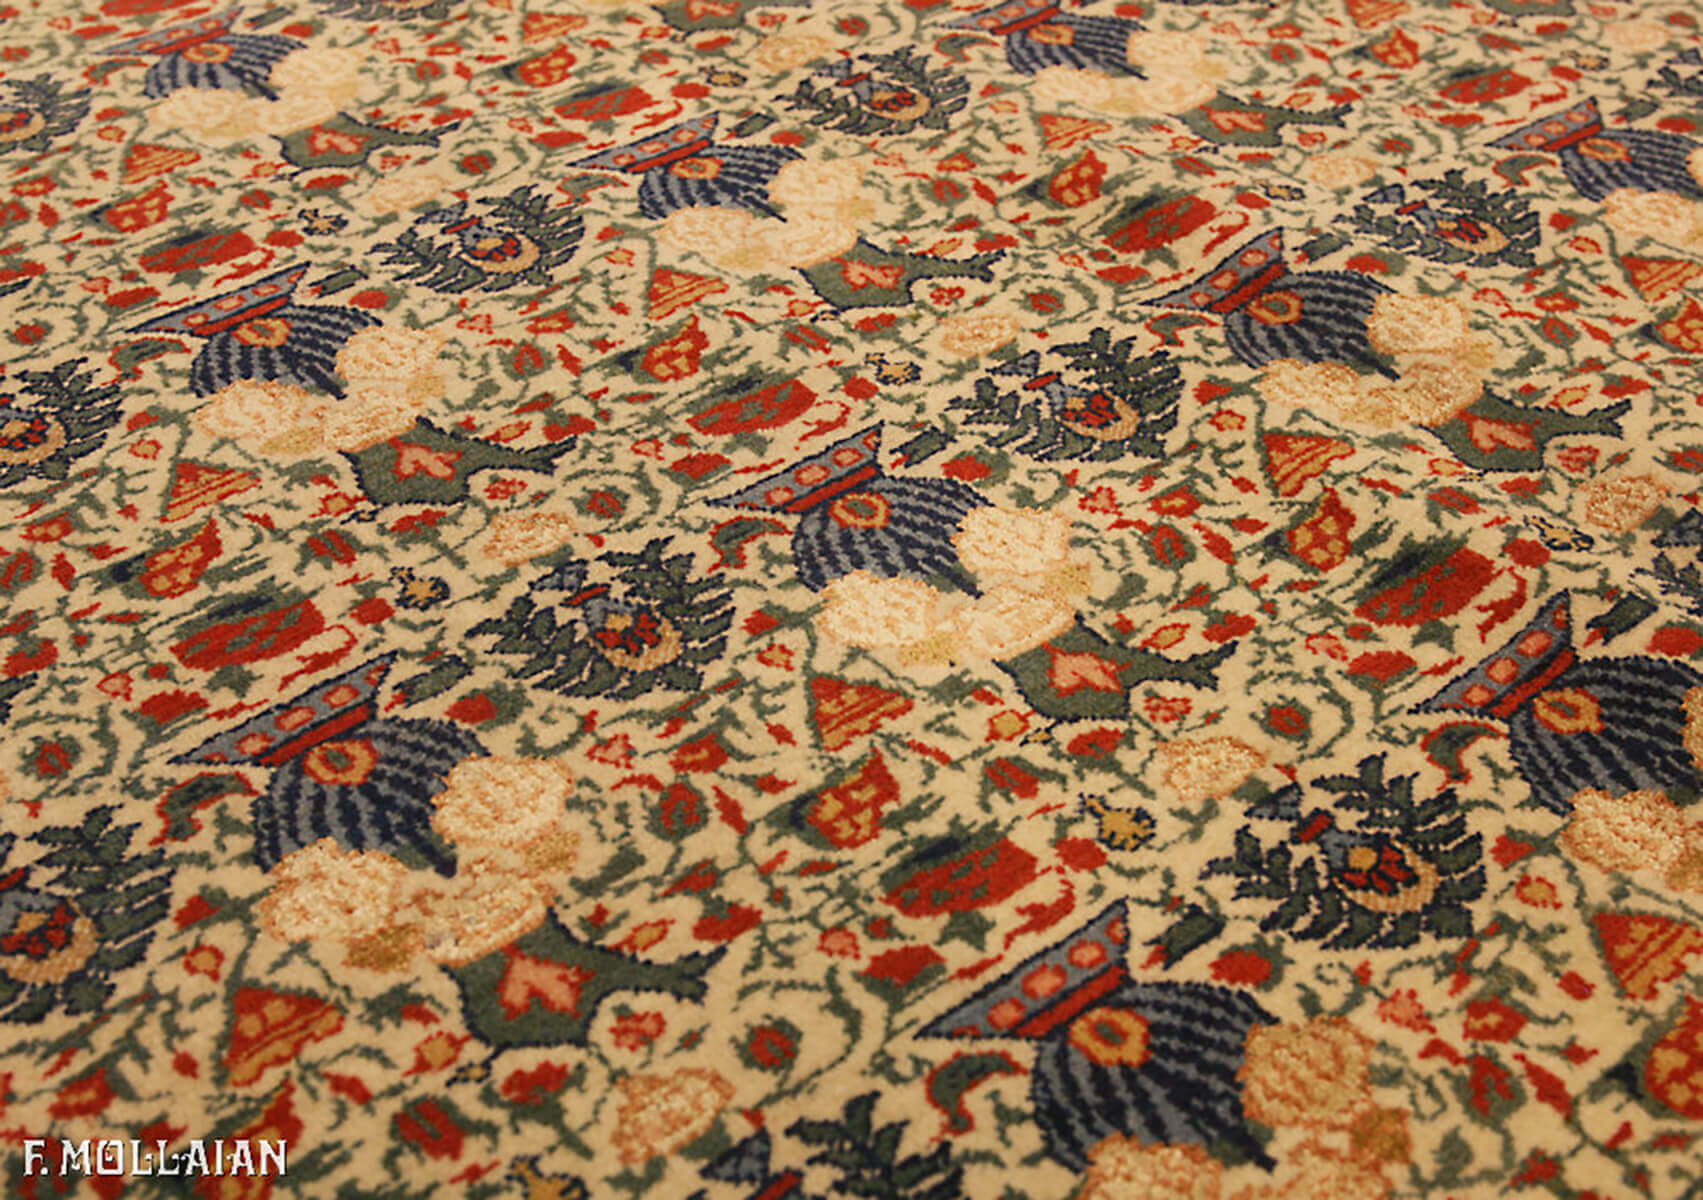 Teppich Persischer Semi-Antiker Tehran Wolle/Seide n°:72828718